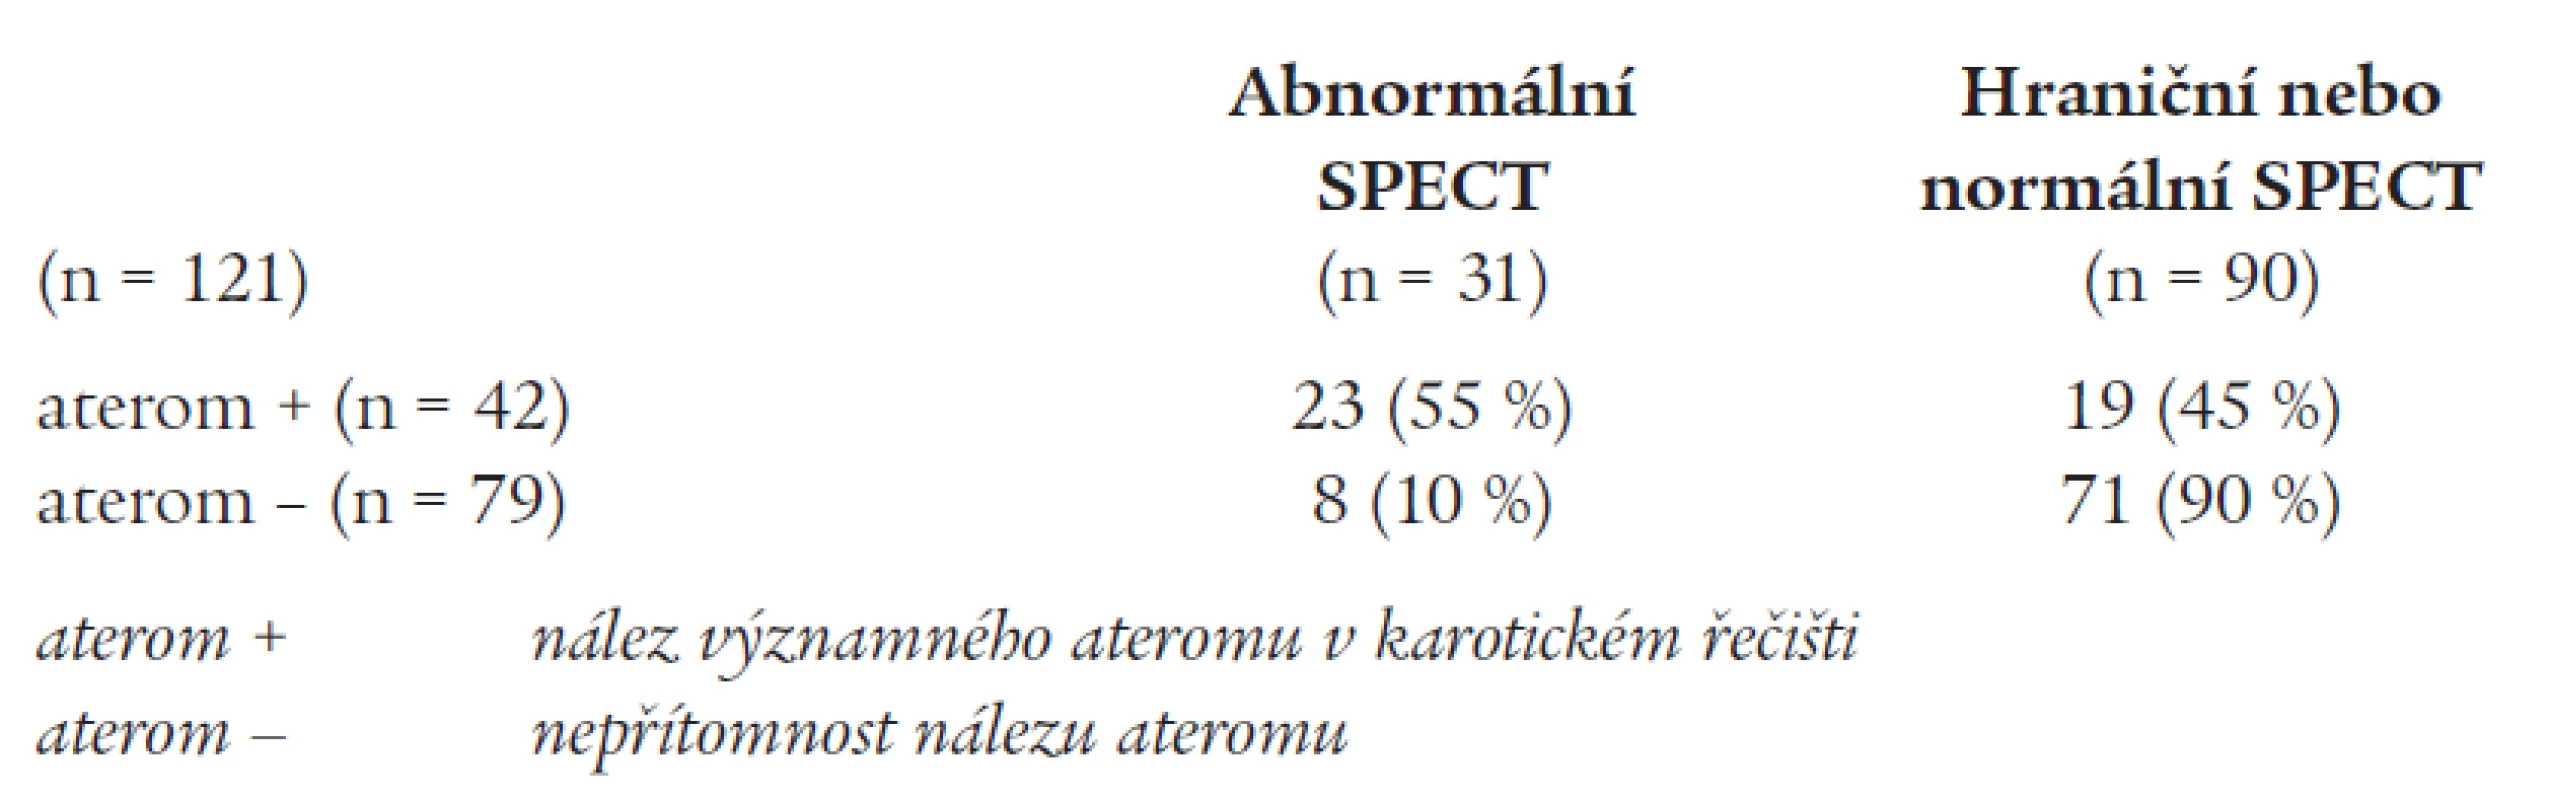 Rozdělení výsledku zátěžového SPECT podle přítomnosti nebo absence ateromu v karotickém řečišti.